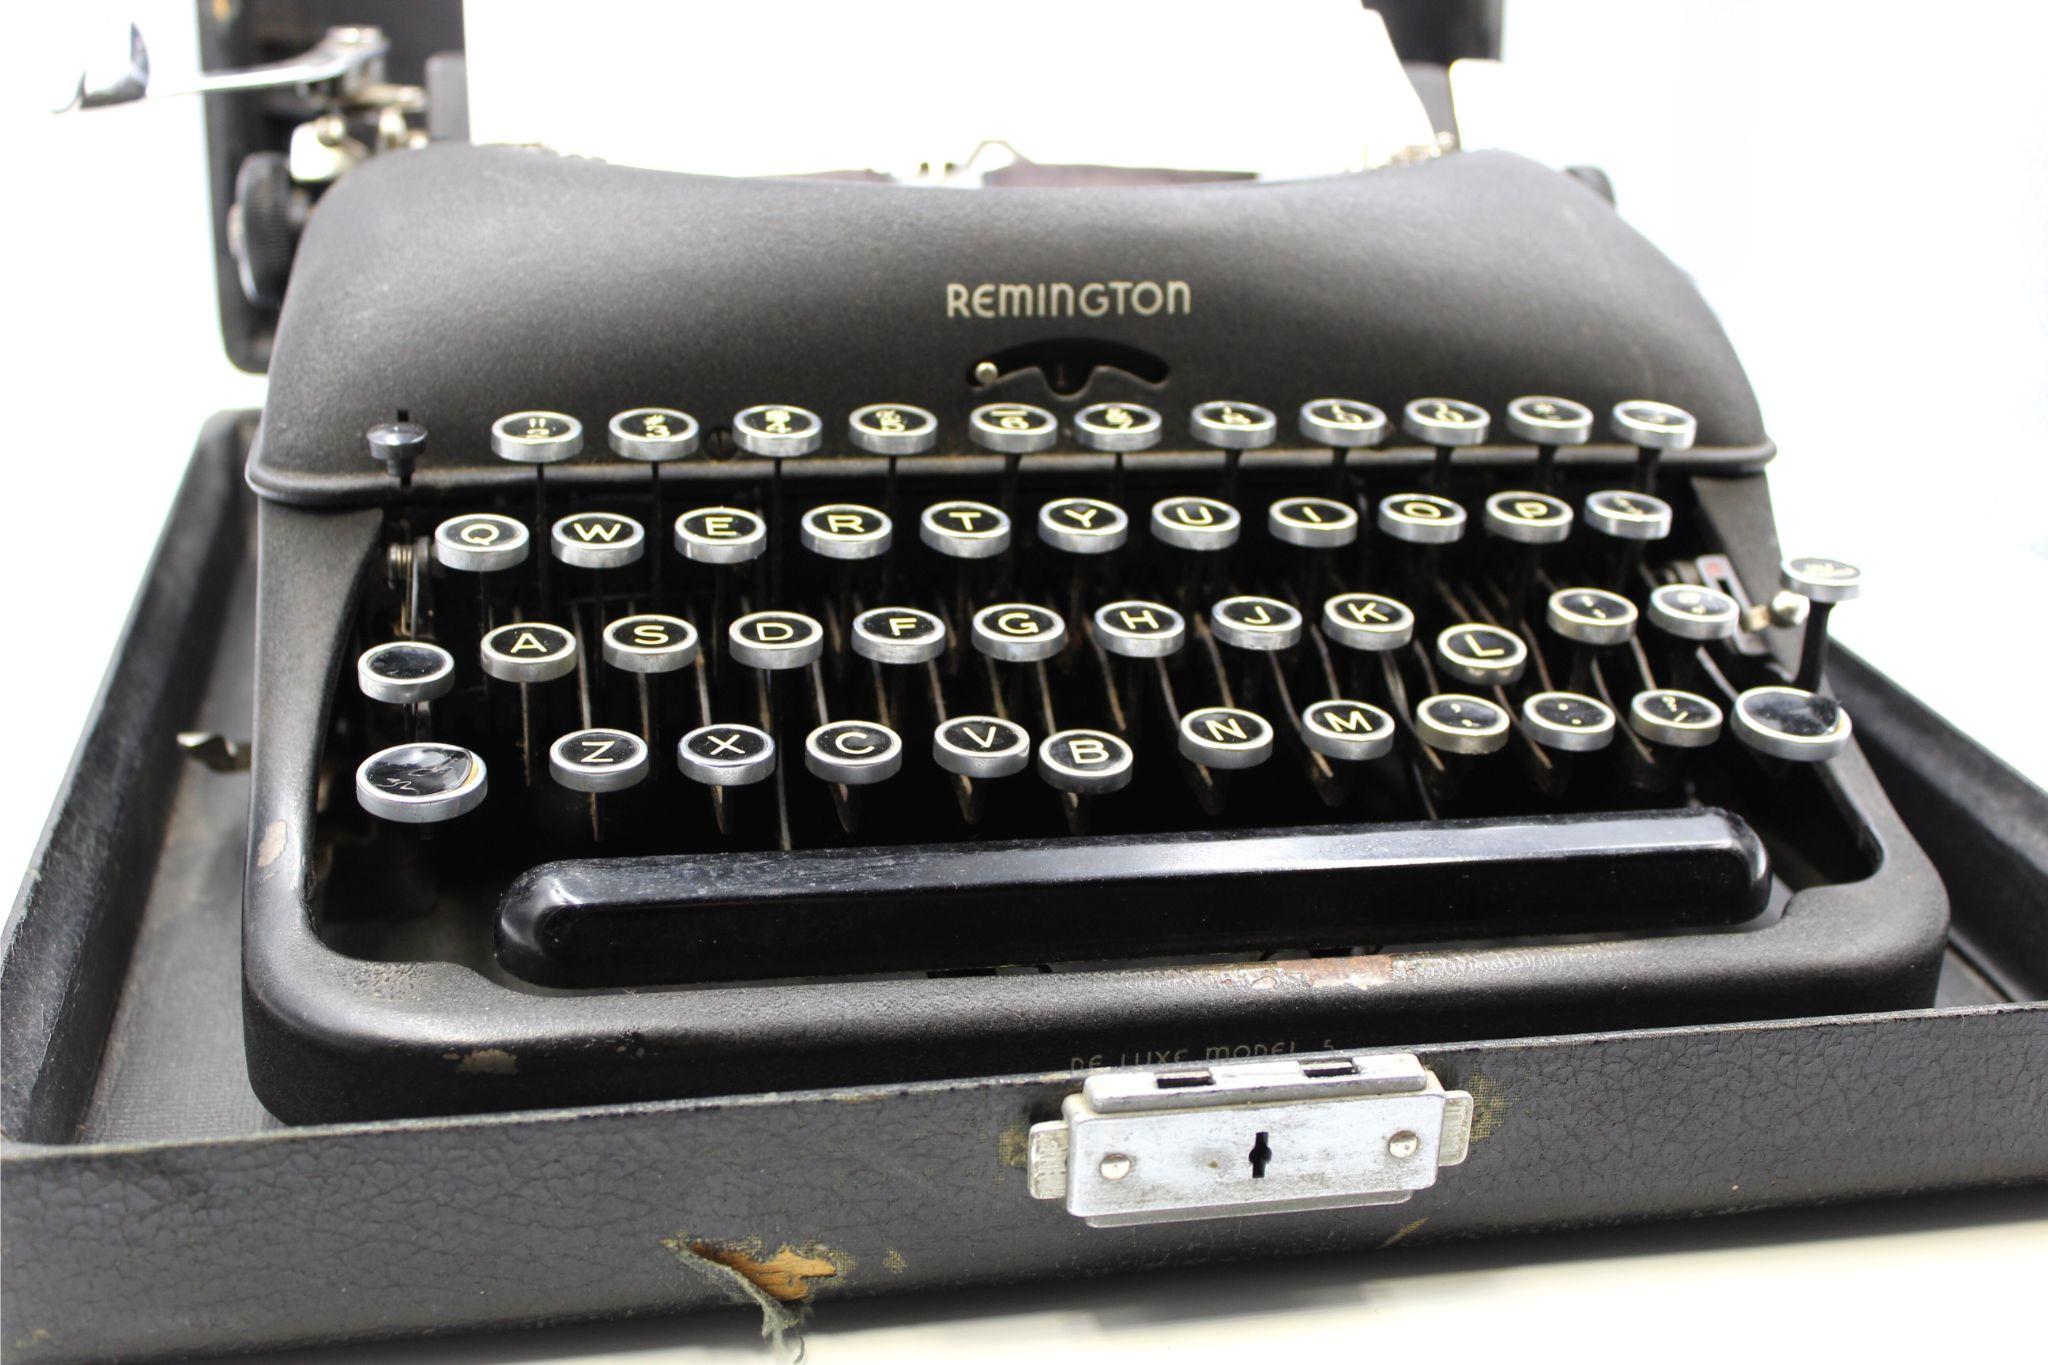 antique remington typewriter